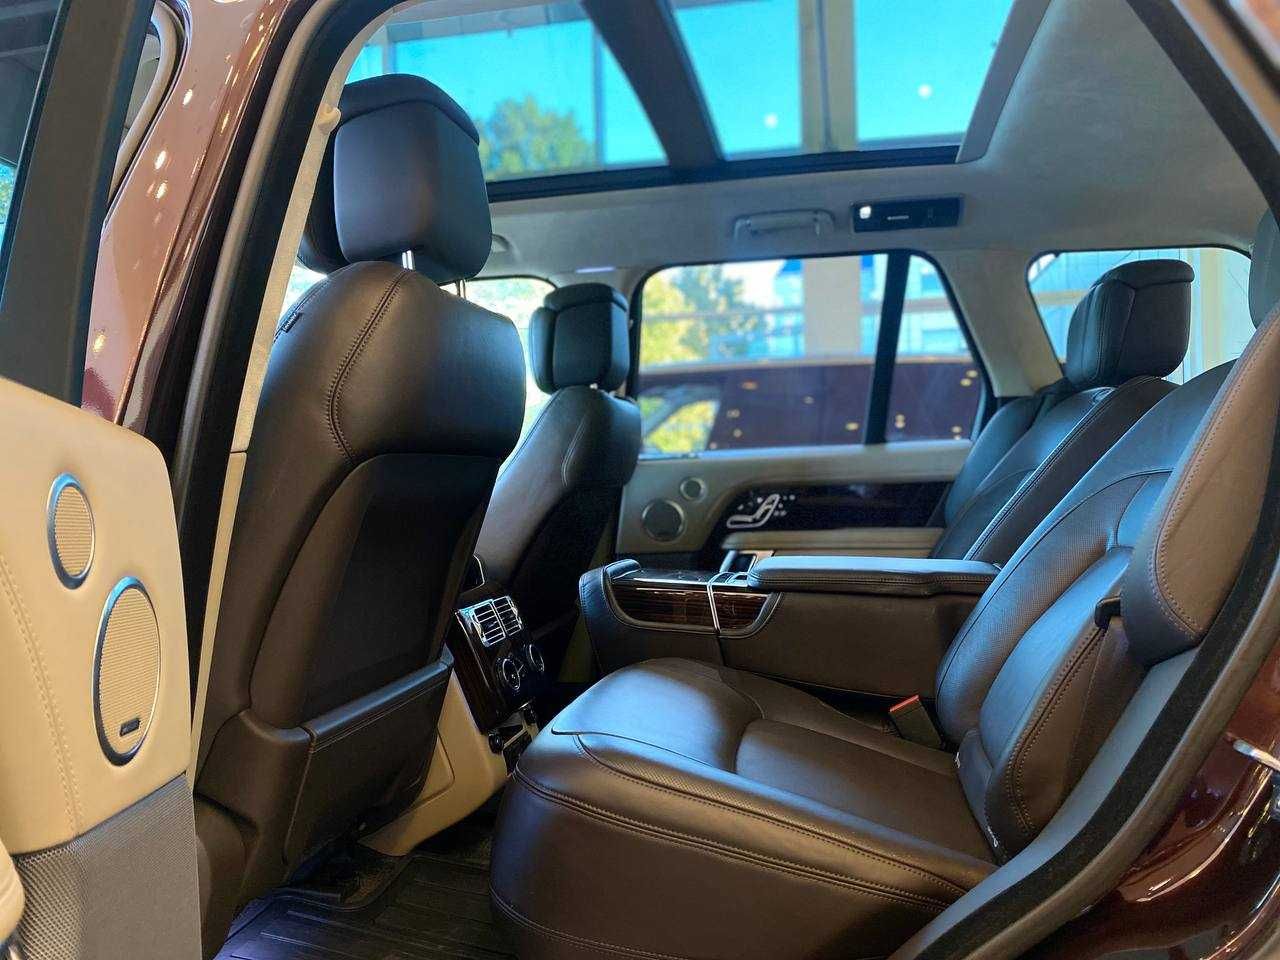 Range Rover 4.4 diesel 2019 авто в наявності